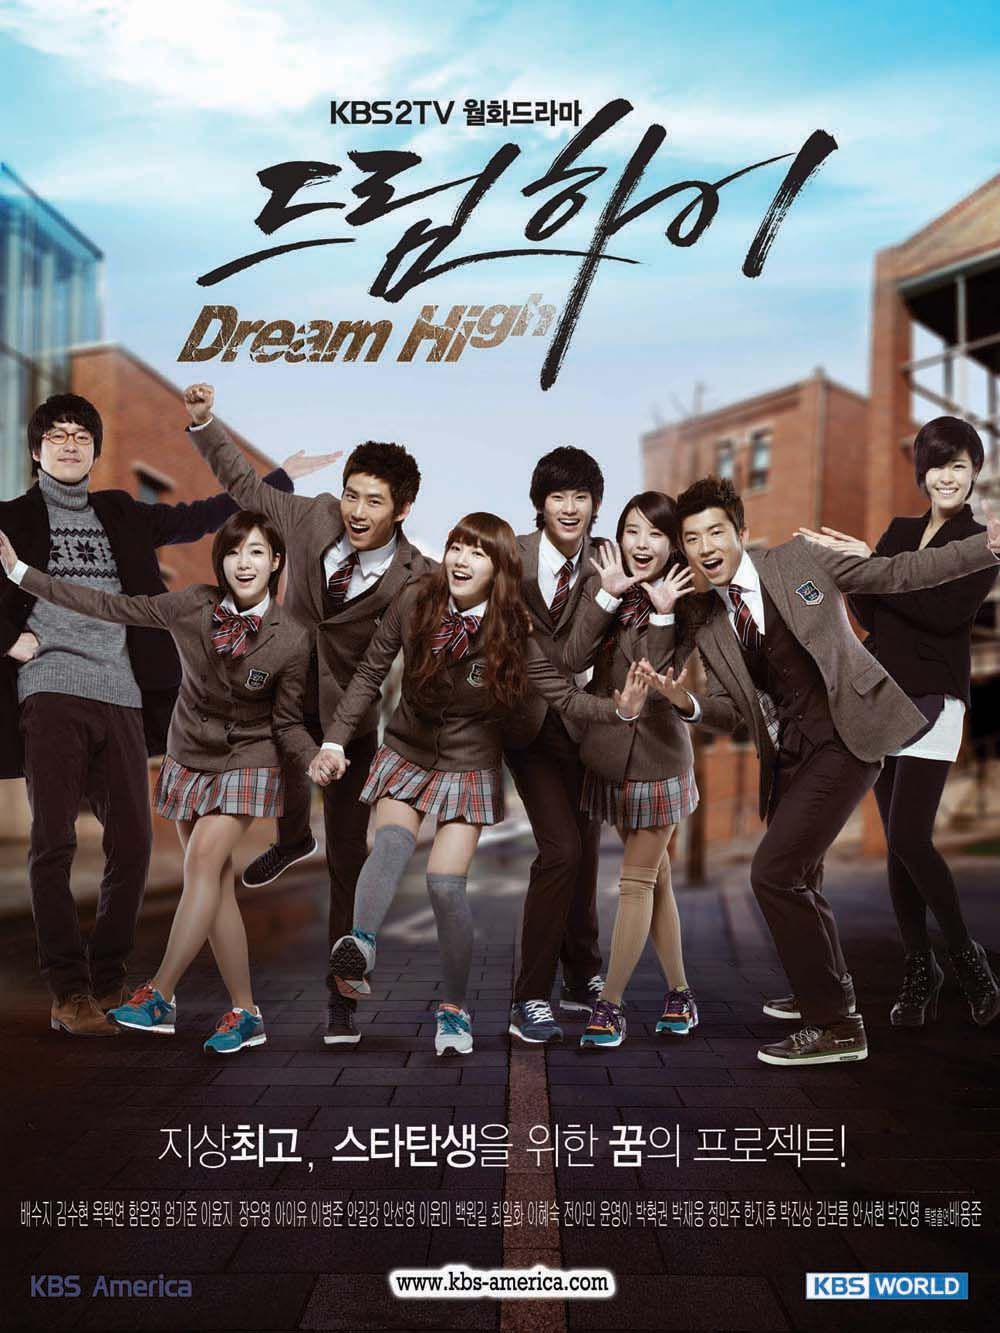 ดูหนังออนไลน์ Dream High Season1 มุ่งสู่ดาว ก้าวตามฝัน ซับไทย (จบ)